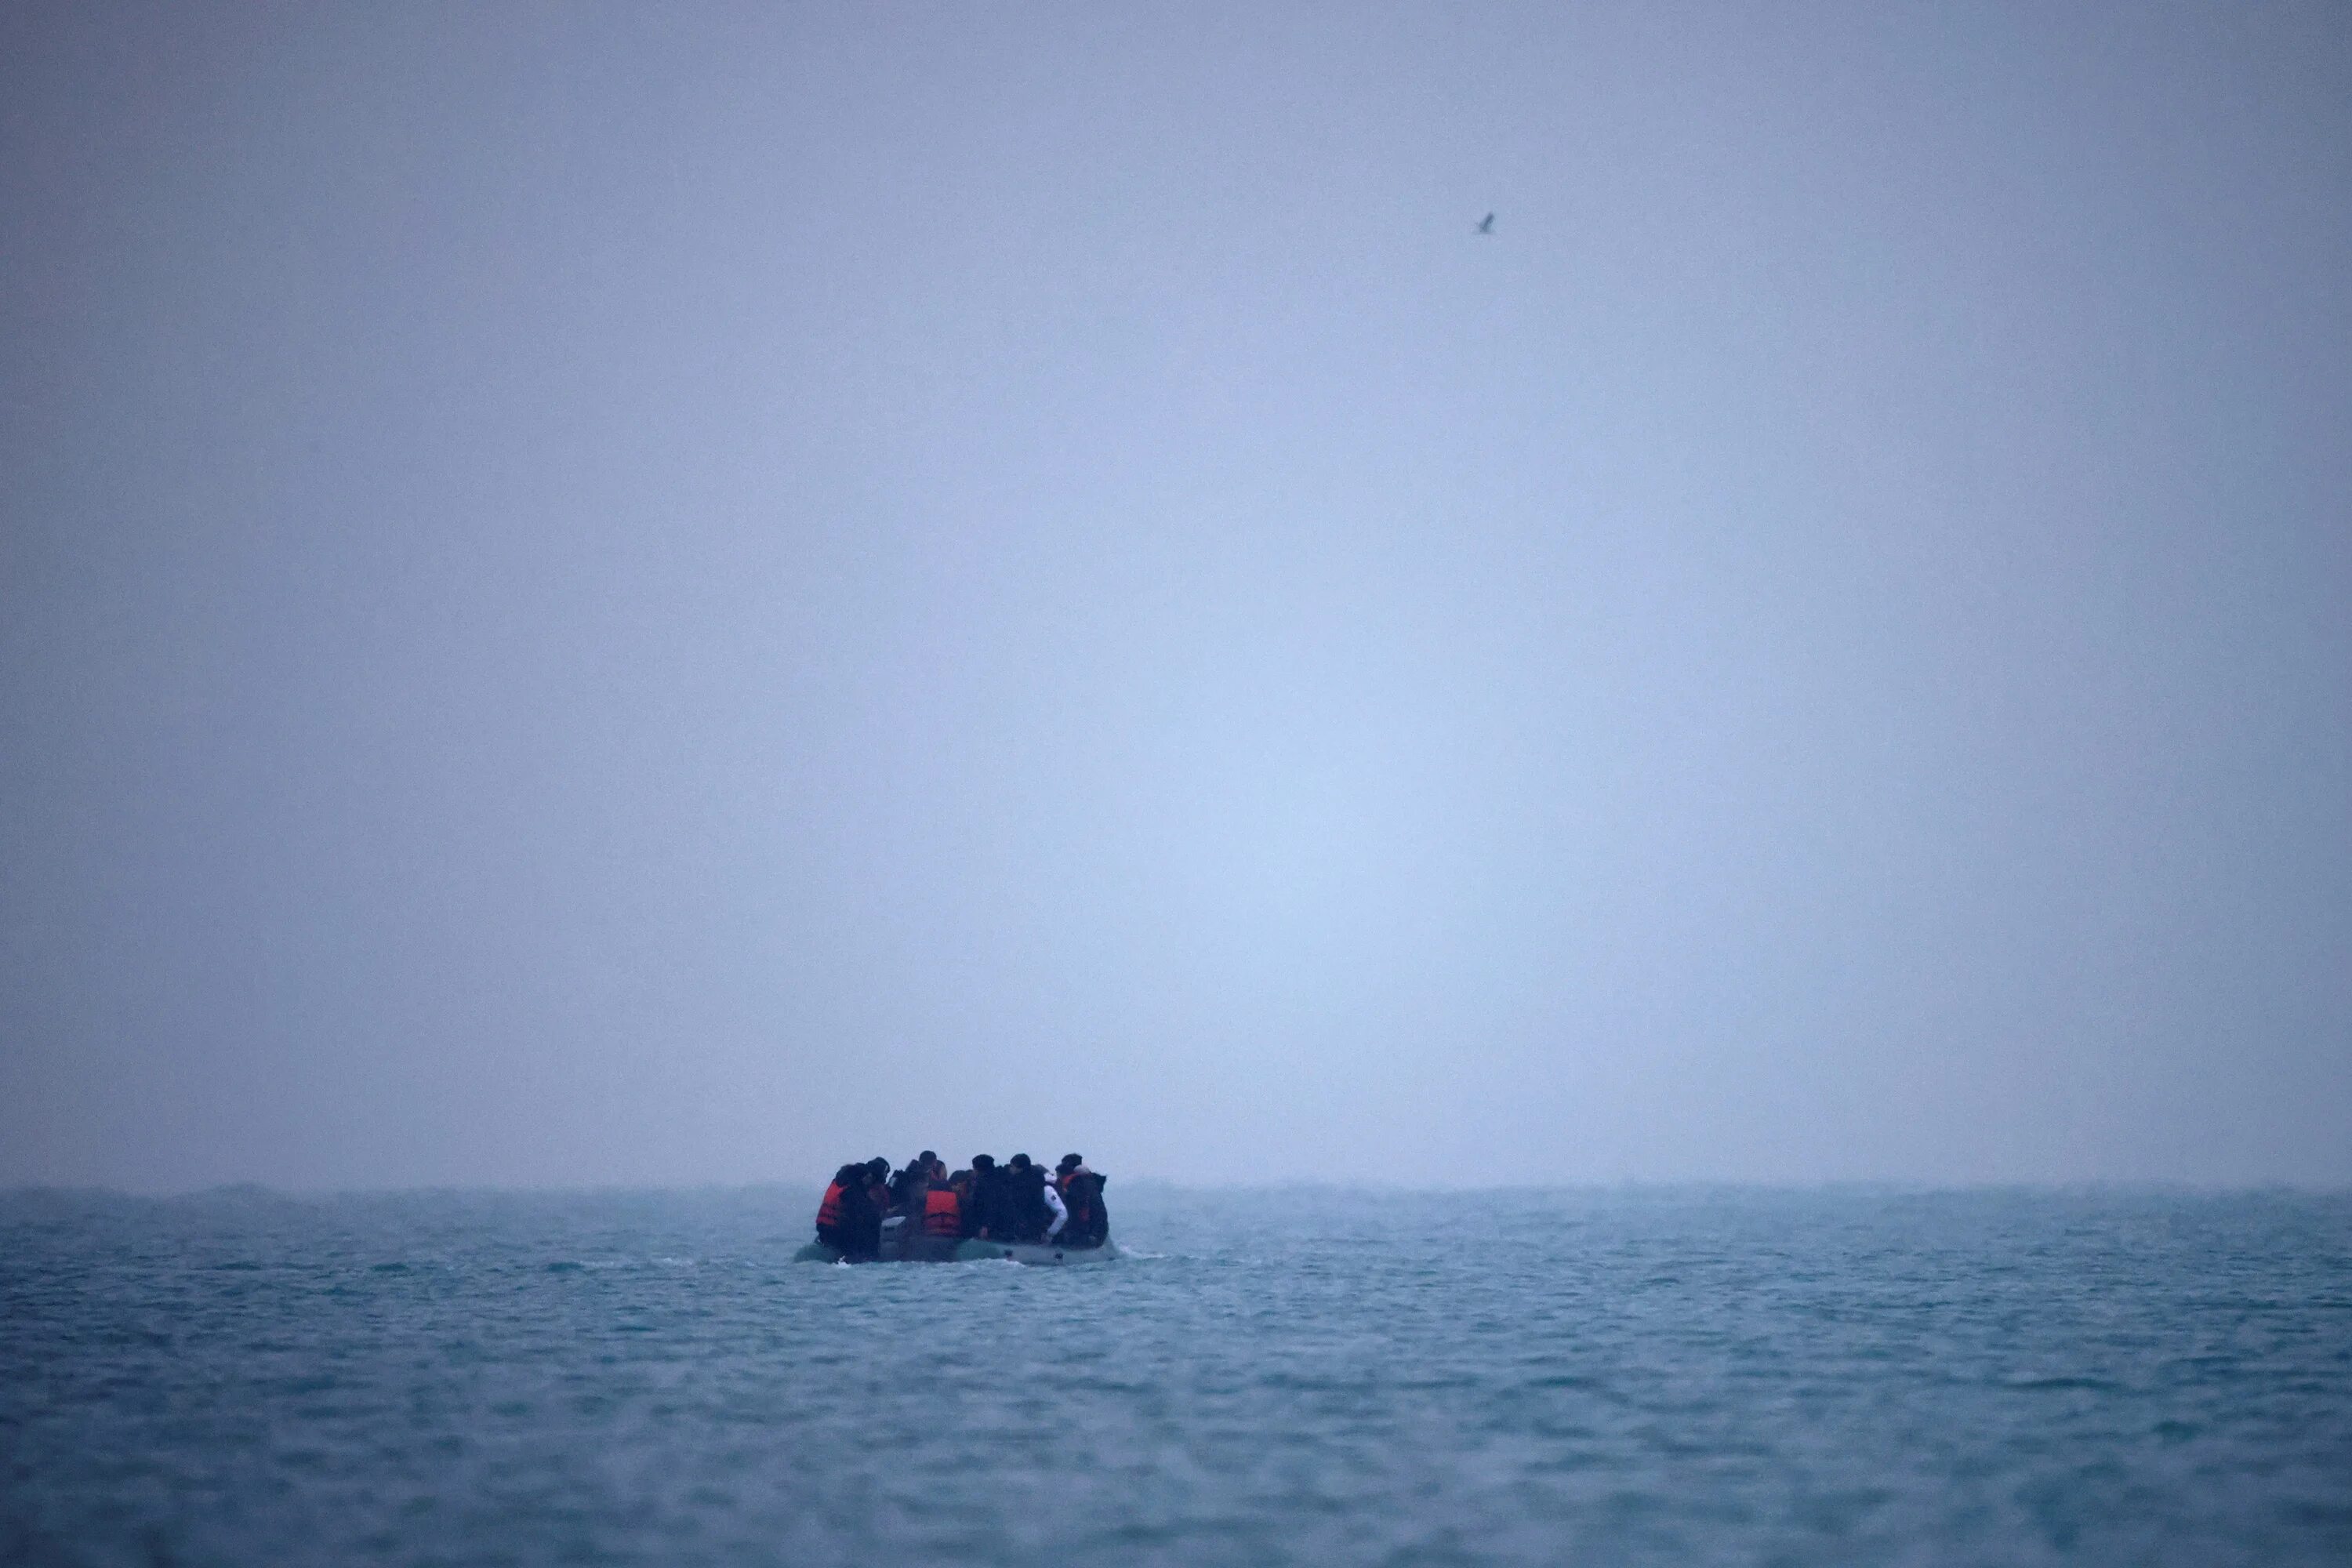 Мигранты на лодках. В ла-Манше потерпела крушение лодка с мигрантами. Затонула лодка с мигрантами. Крушение судна с мигрантами у берегов Греции фото. Ночь у берега 83 глава вк